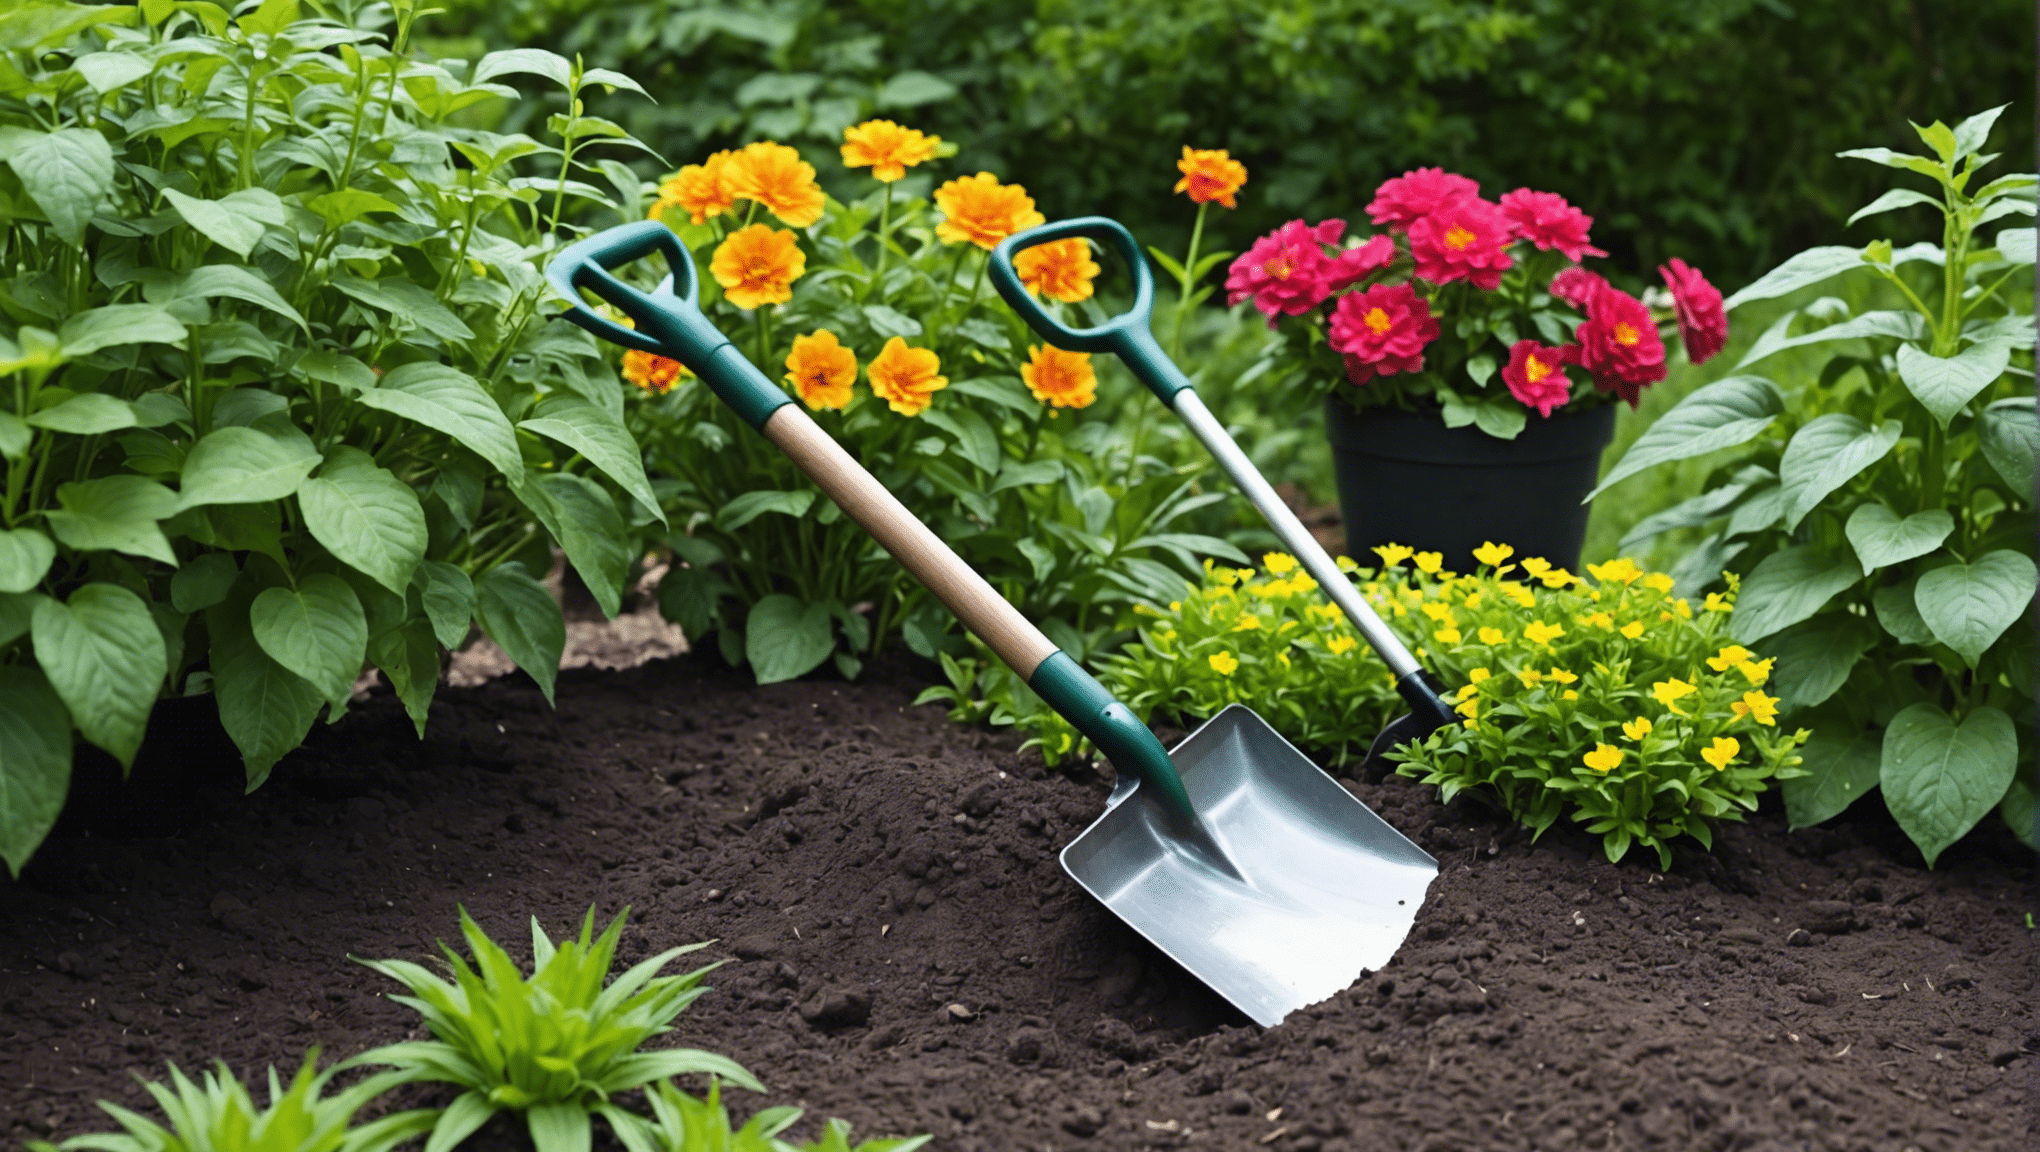 find den ideelle lille haveskovl til alle dine havebehov med vores udvalg af holdbare værktøjer af høj kvalitet.